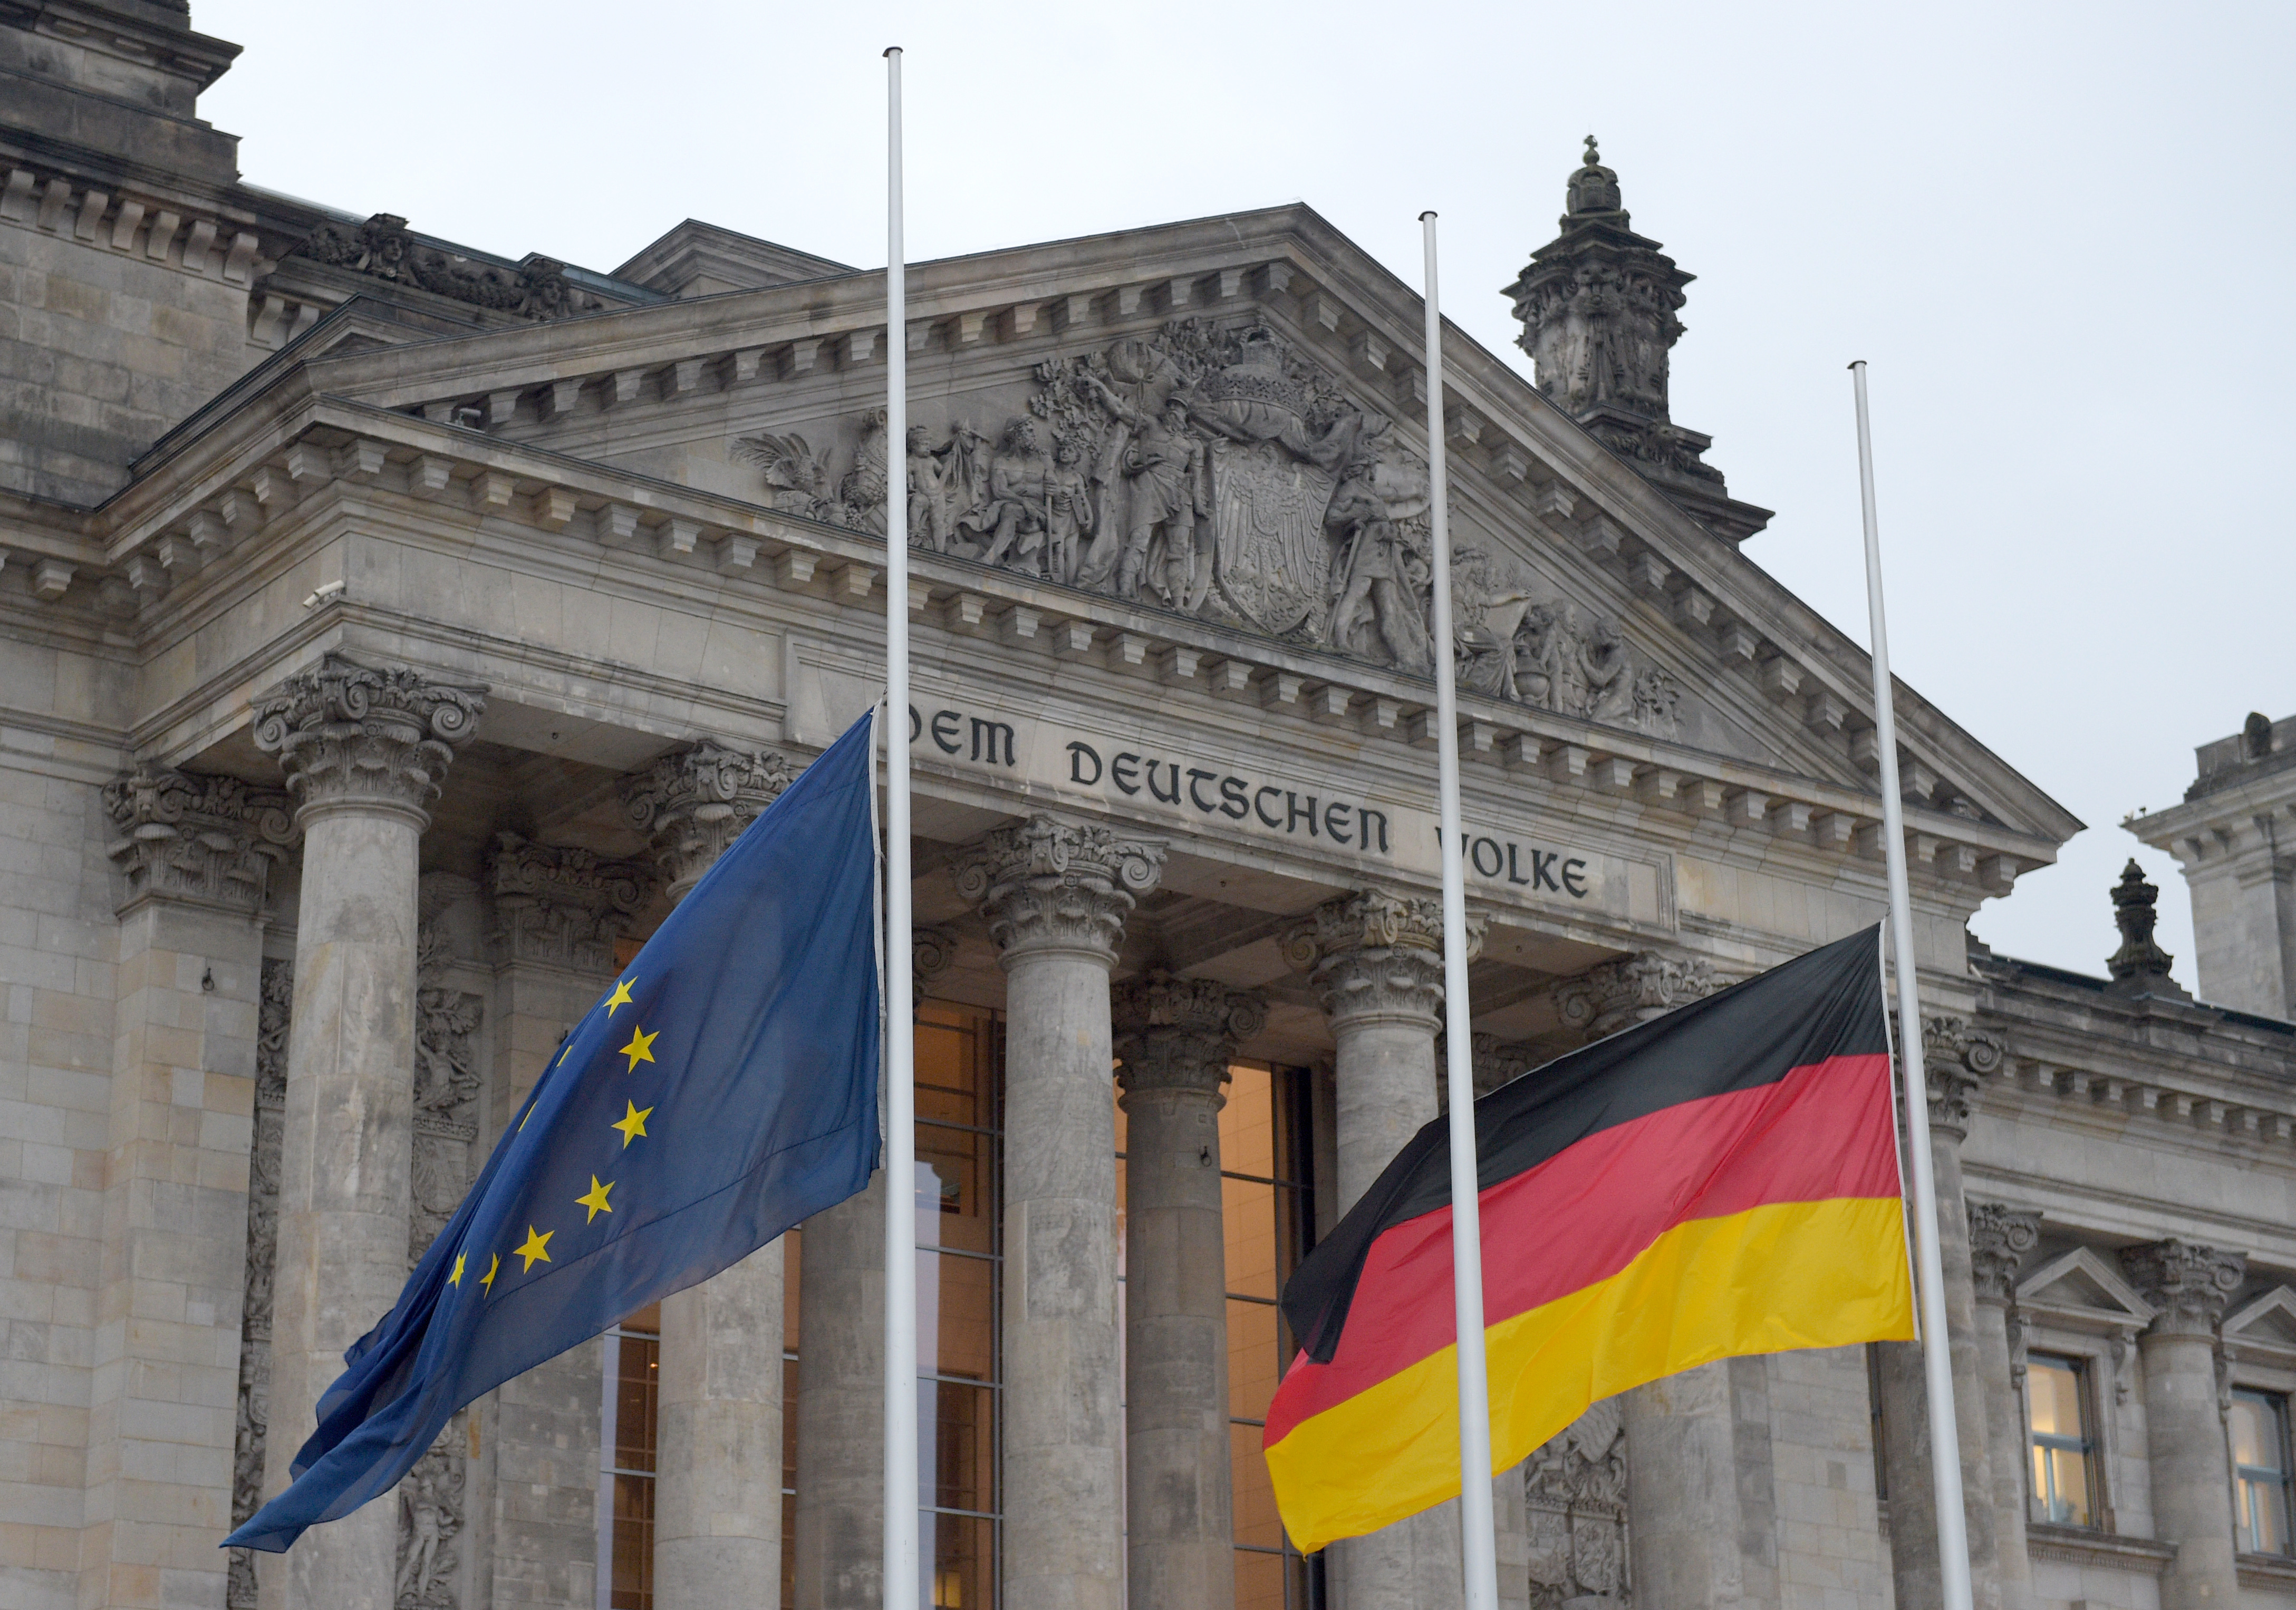 Β. Μουνχάου: Το πρόβλημα της ζώνης του ευρώ το λένε Γερμανία, όχι Ελλάδα